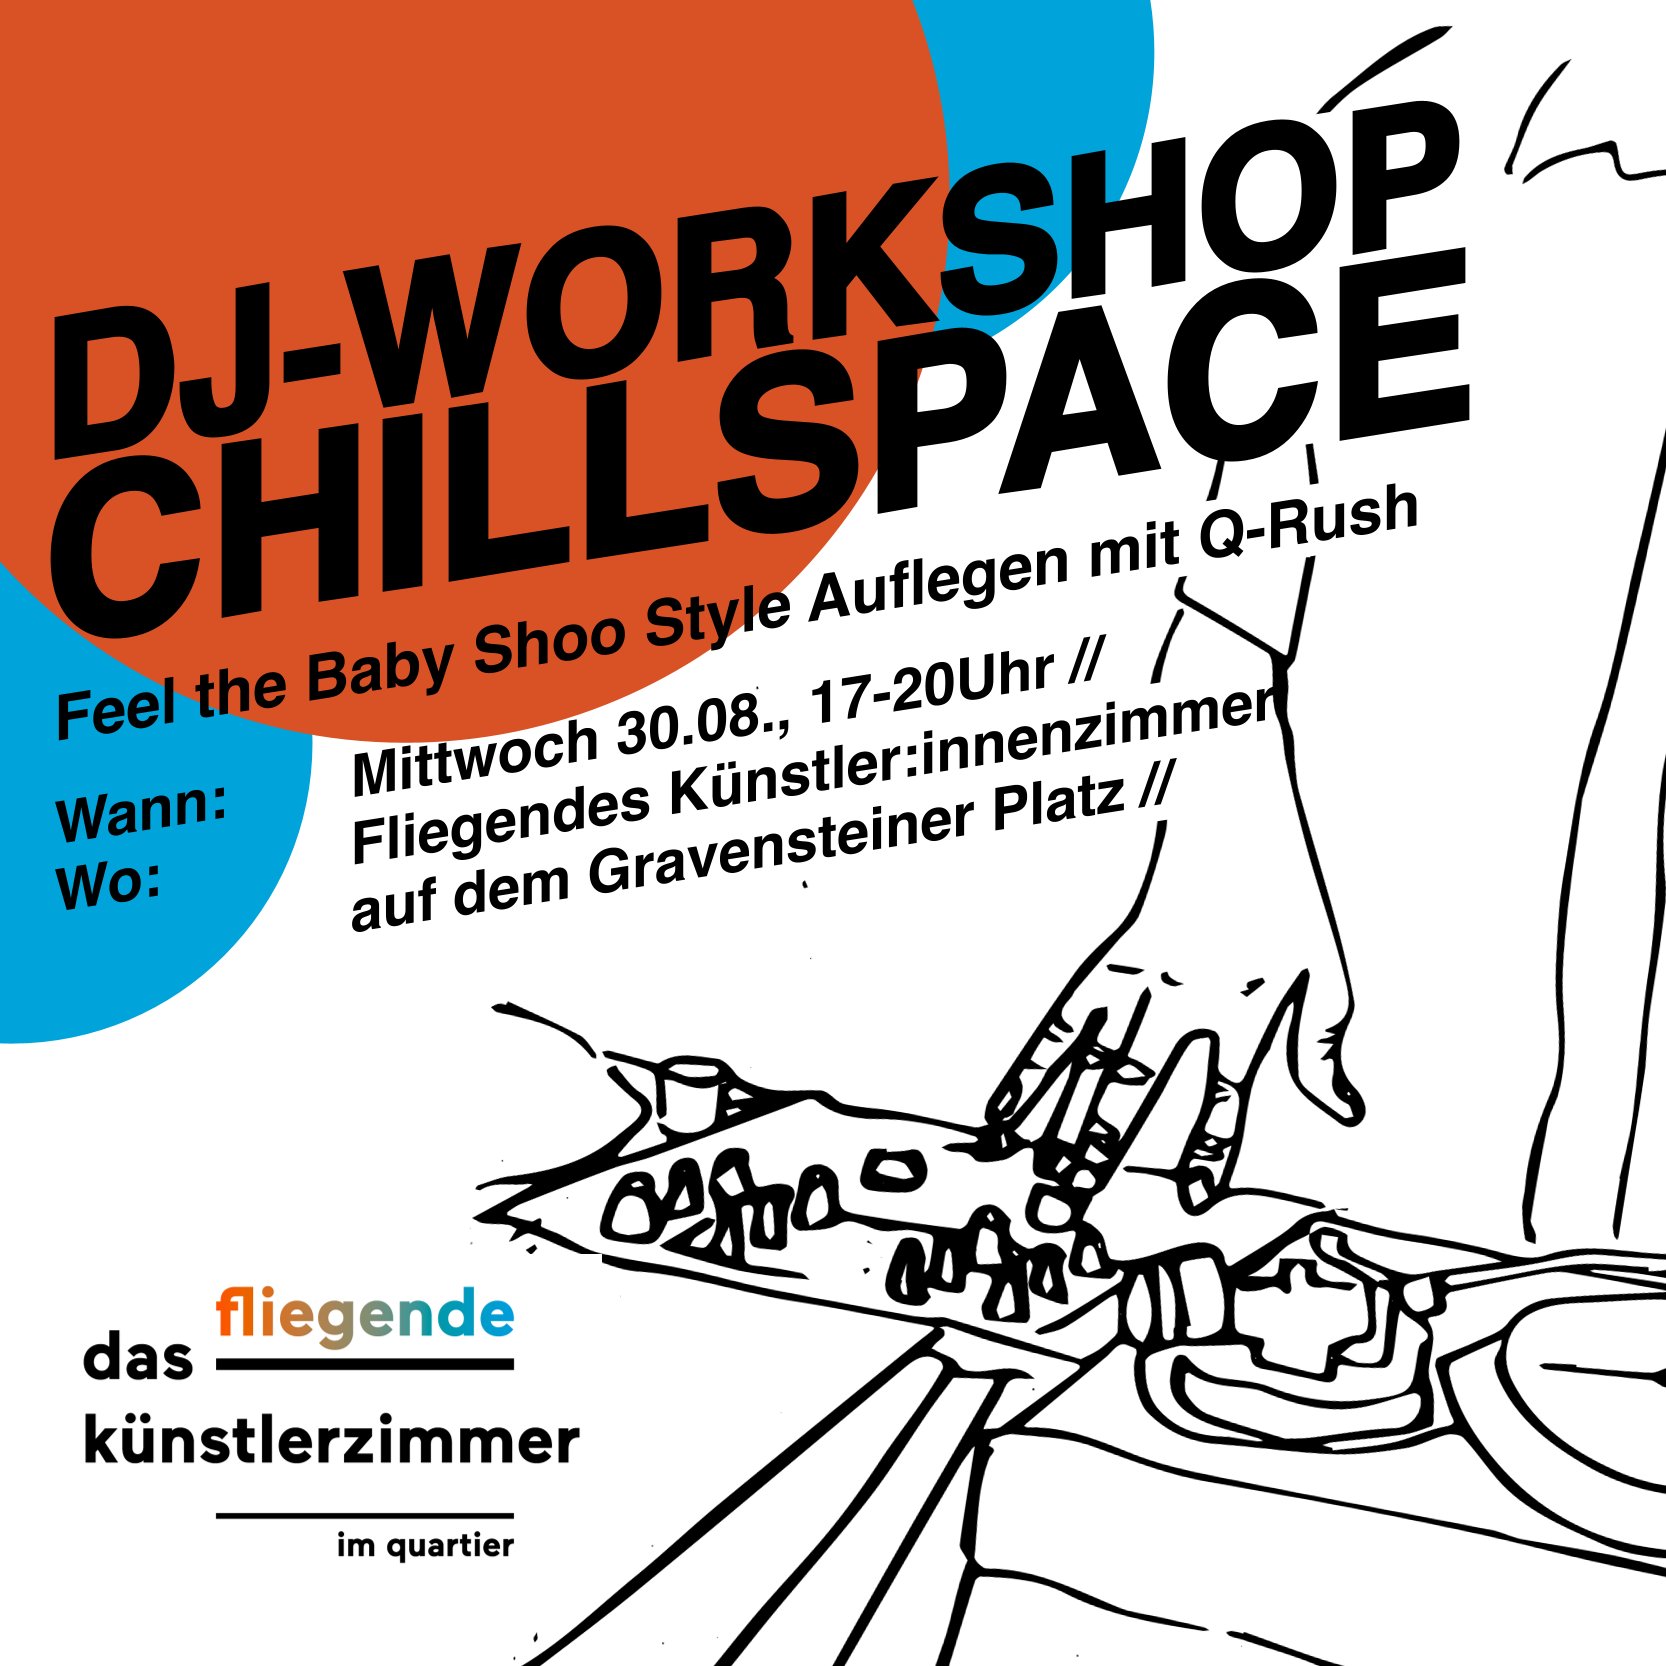 DJ-Workshop & Chillspace